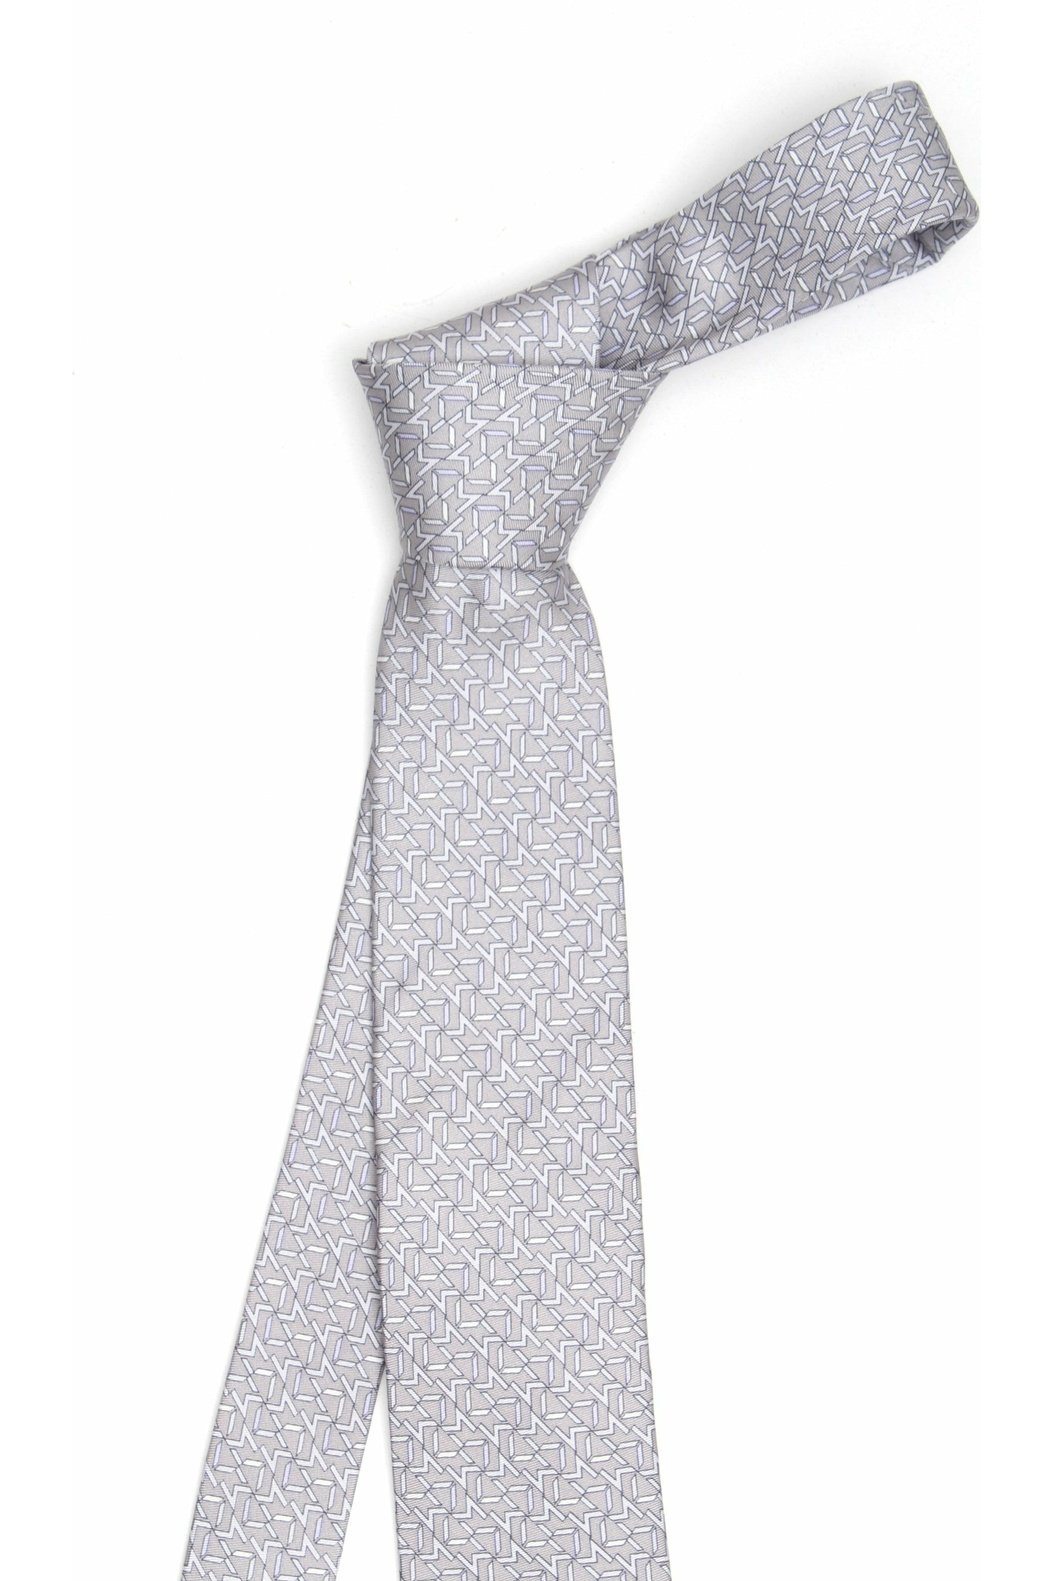 MICHAELKORS MD0MD91271 cravatta in seta con logo stampato allover